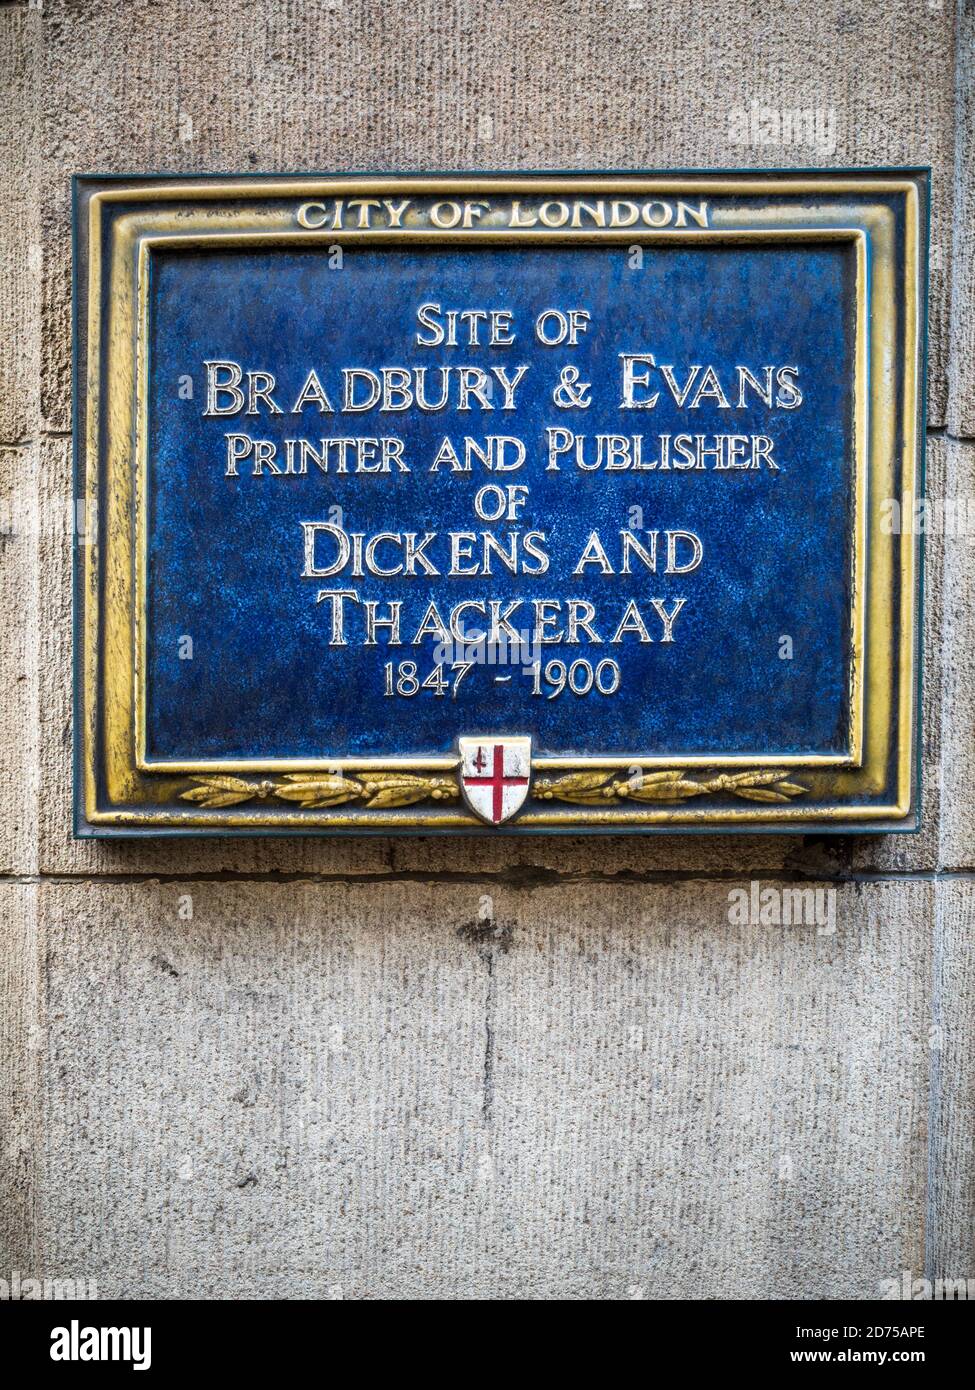 Bradbury & Evans Drucker und Herausgeber von Dickens and Thackeray - City of London Blaue Plakette markiert Standort von Bradbury & Evans 1847-1900 auf Fleet St.. Stockfoto